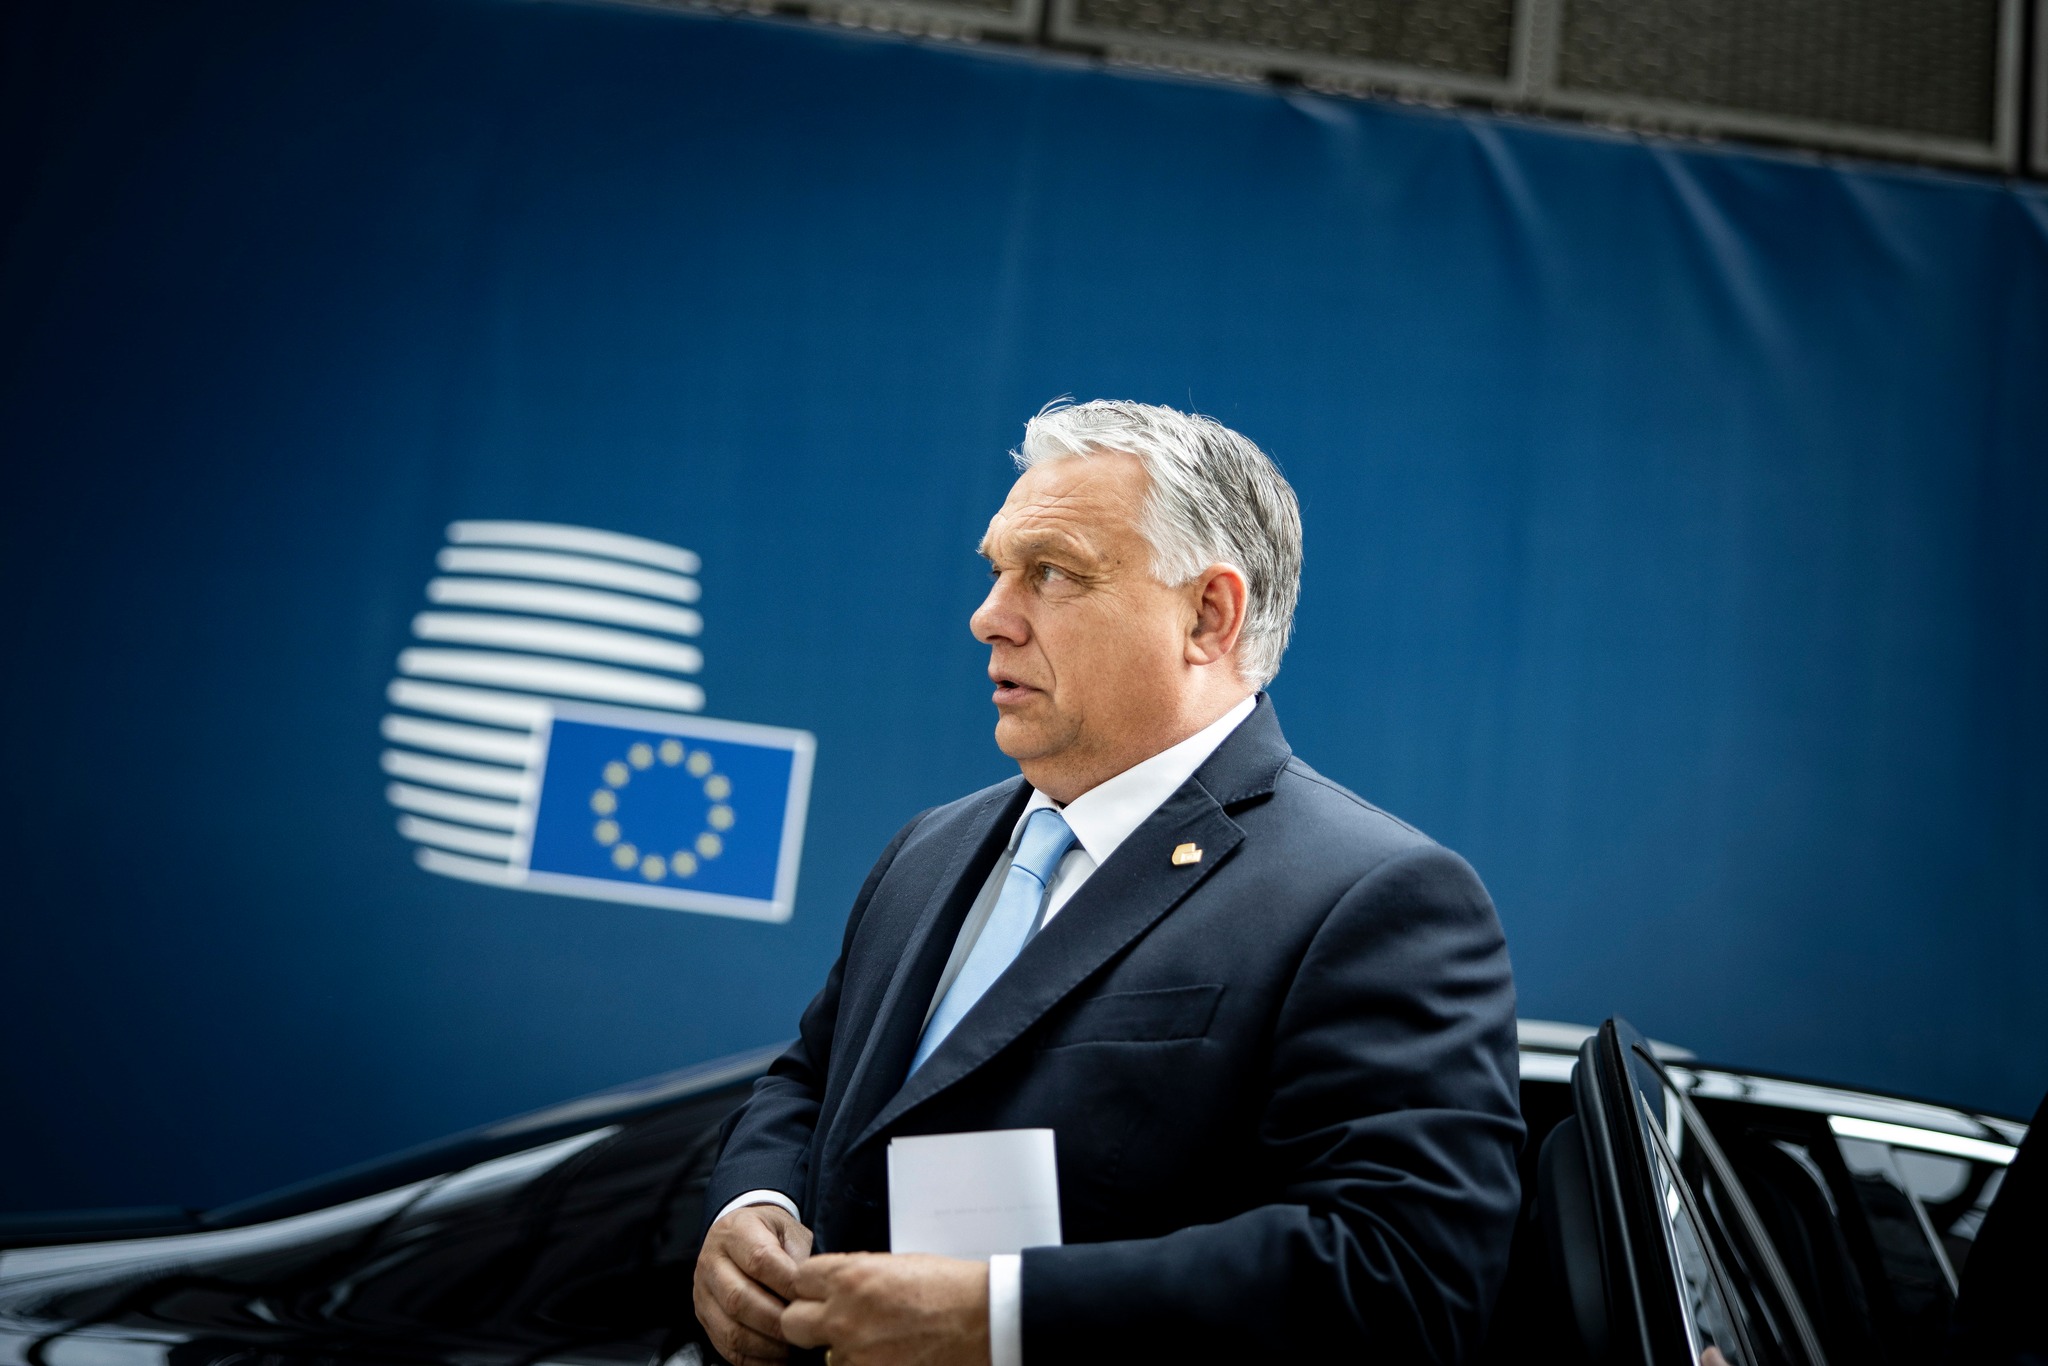 Hungarian Prime Minister Viktor Orbán